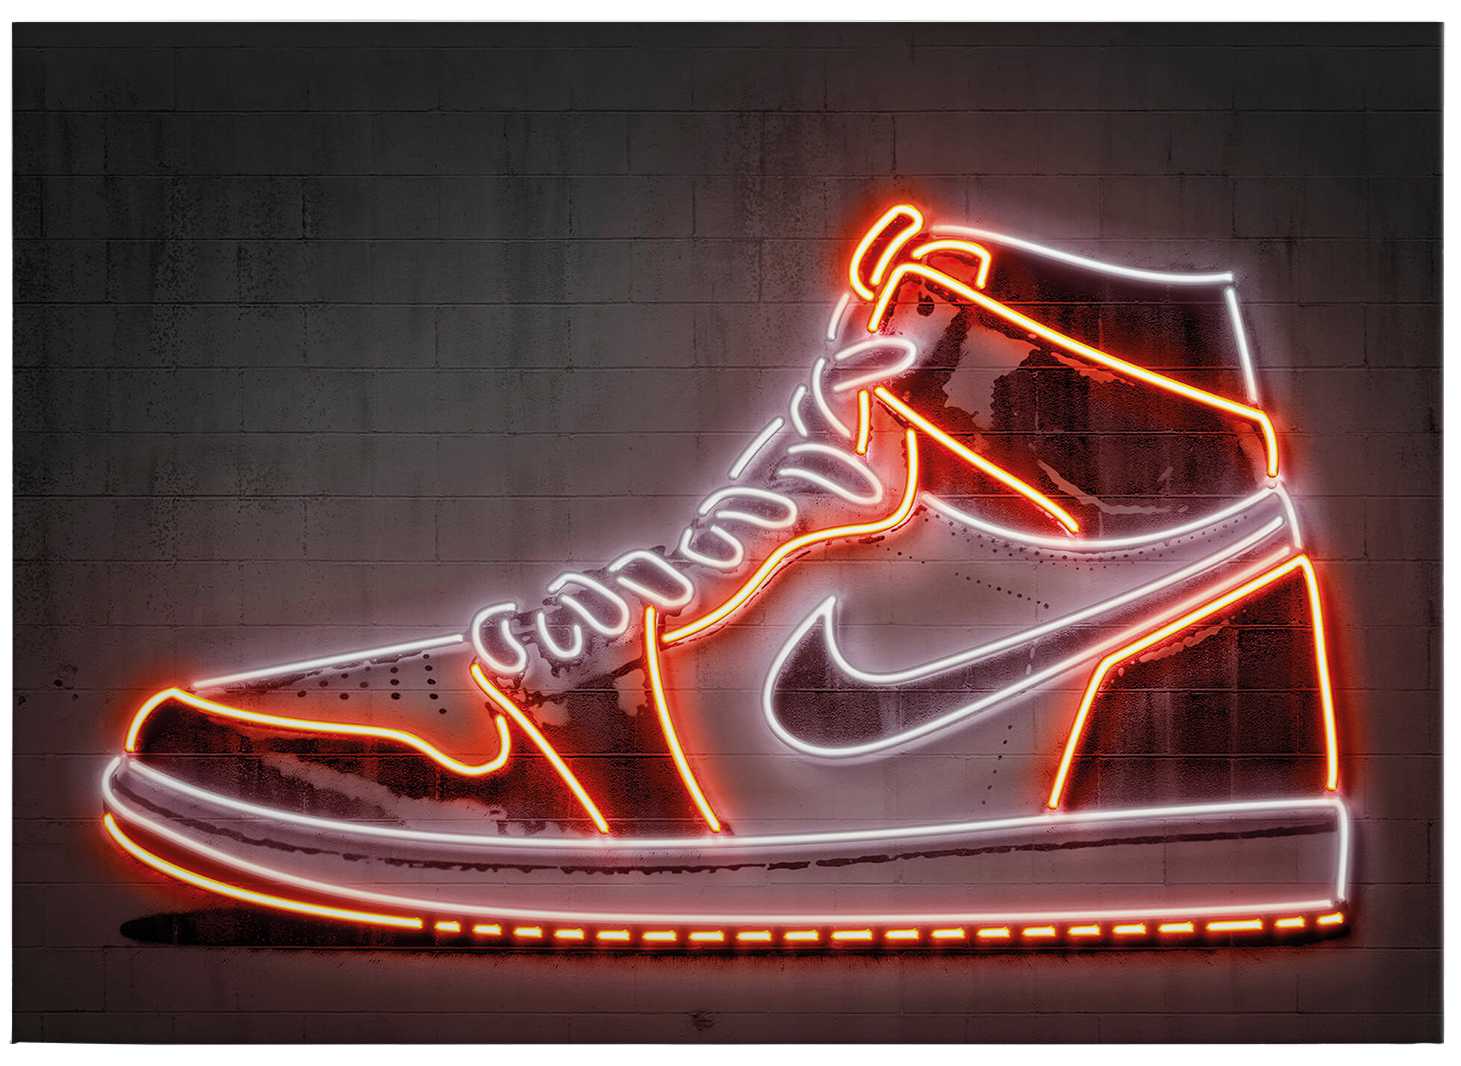             Tableau sur toile néon "Sneaker" de Mielu - 0,70 m x 0,50 m
        